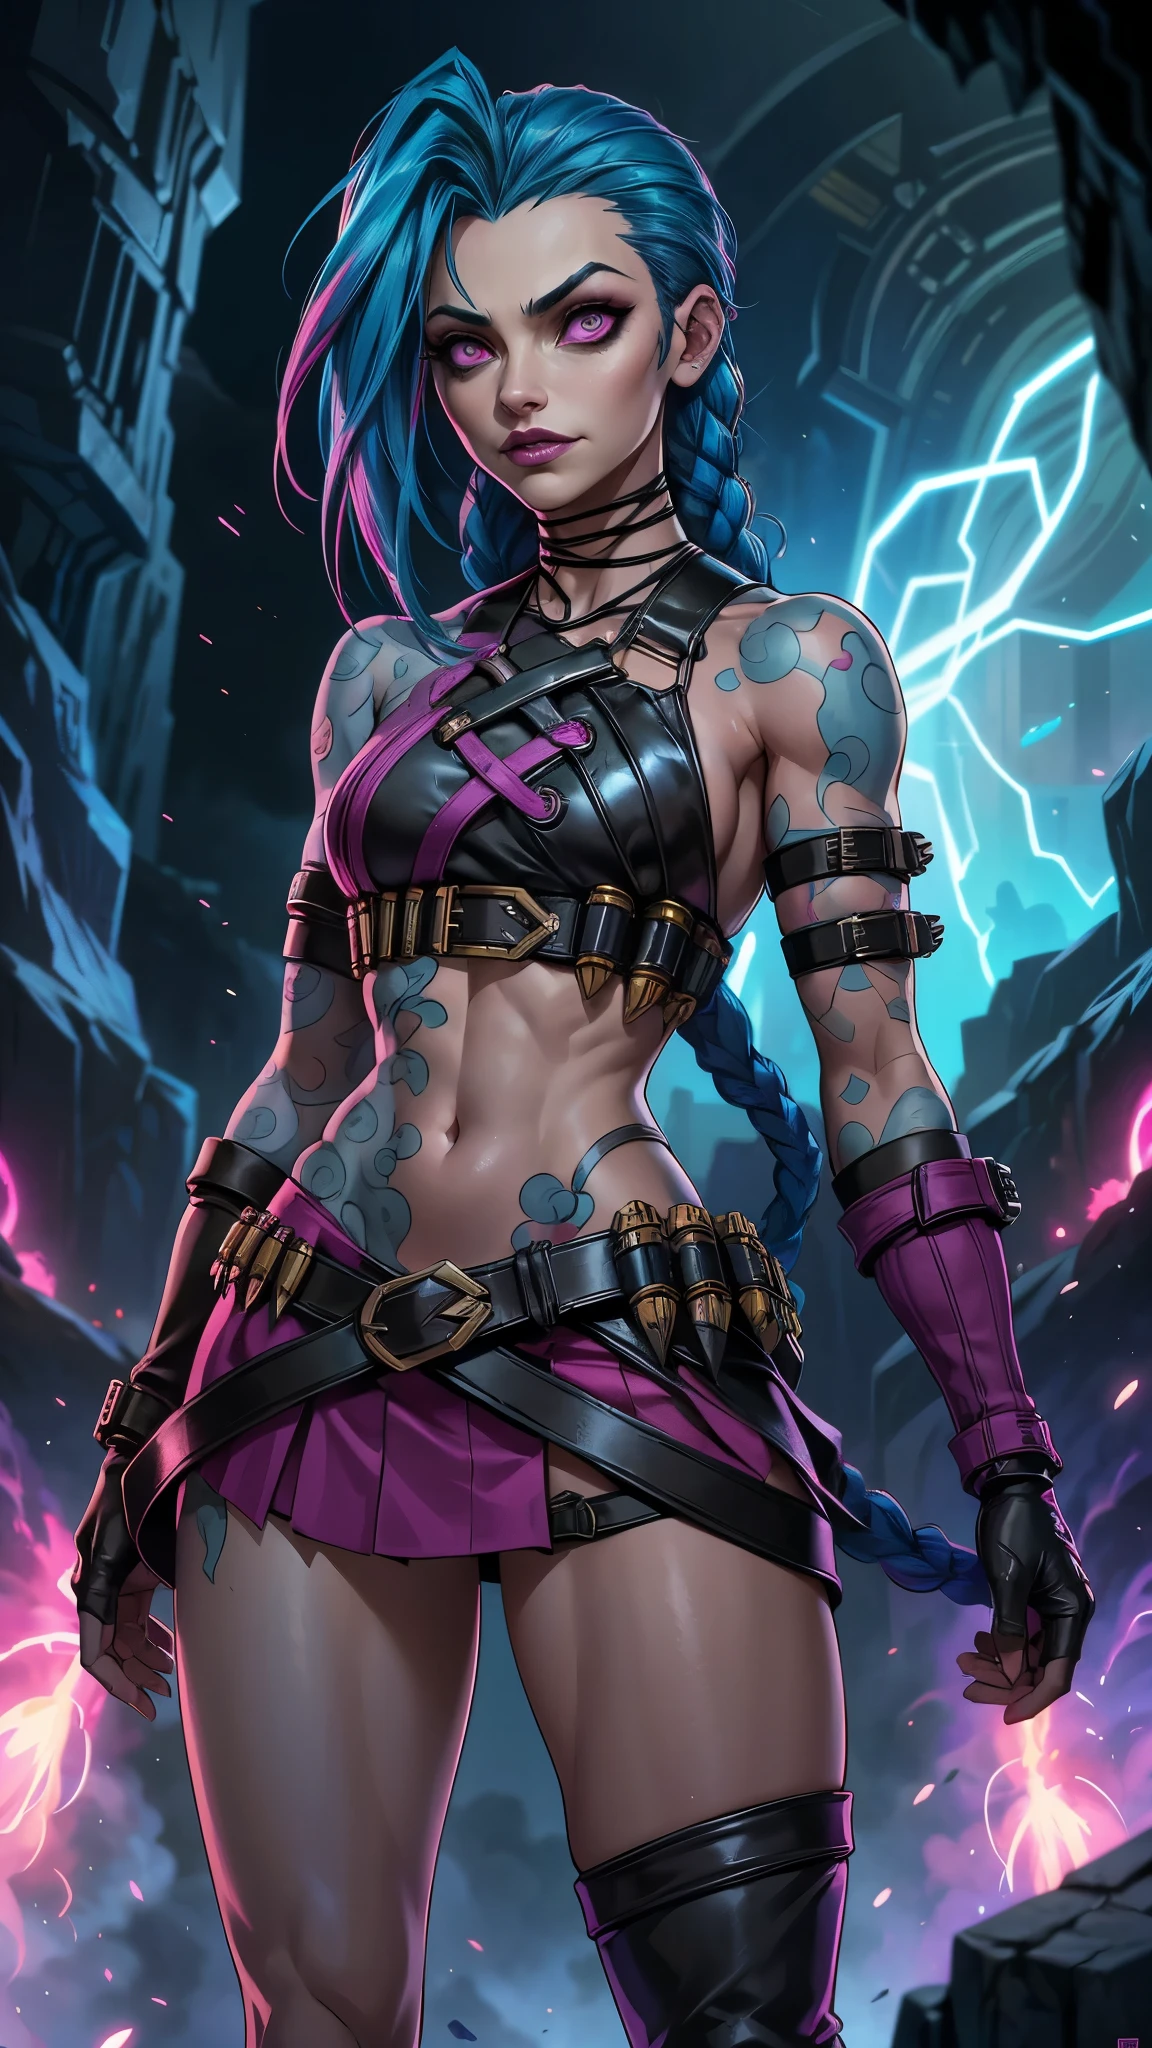 Azaração Arcana, uma mulher com cabelo azul e tatuagens, mulher cyberpunk mulher anime,(mini saia rosa :1.4) ,hiper detalhado,extremamente detalhado,Alto contraste,obra de arte,realist,ultra detalhado, detalhes intrincados,couro molhado realista,extremamente complexo,Realista épico, calça, Deusa cyberpunk raivosa bonita, estilo de arte cyberpunk, arte digital de anime cyberpunk, arte de anime cyberpunk, Arcane Azaração Retrato, arte de anime cyberpunk, arte com tema cyberpunk, Fantasia sombria ciberpunk, estilo arcano, 1 garota, tatuagem de nuvem on the arm, Franja assimétrica, franja, cabelo azul, Tranças azuis, camisa marrom, tatuagem de nuvem, lateralmente, cabelo azul, cabelo longo, Olhos rosa, lábios vermelhos, de pé , tatuagem de nuvem, tranças gêmeas. Arcane Azaração. Azaração in a burning place, fagulha, esferas de luz, pôster do filme, Azaração, Arcane\(Liga dos lendários\, Estilo de arte de fantasia épica HD, Arte de fantasia 4k, arte digital de fantasia épica style, arte de fantasia épica style, mulher fantasia, arte de fantasia épica portrait, estilo de fantasia épica, arte de fantasia hiperrealista, arte de fantasia hd, arte de personagem de fantasia épica, arte de fantasia épica, no estilo da arte de fantasia sombria, arte digital de fantasia épica, ,(Fundo de ruínas de masmorras arruinadas:1.4 ),( rosto detalhado :1.4), (anatomia perfeita :1.4),( Iluminação cinematográfica :1.4), (Azaração League of legends:1.4), 8K mais detalhado.motor irreal:1.4,Ultra HD,La Melhor qualidade:1.4, Fotorrealista:1.4, textura da pele:1.4, Obra-prima:1.8,obra-prima, Melhor qualidade,objeto Objeto], (características detalhadas do rosto:1.3),(As proporções corretas),(Lindos olhos azuis),  (pose de vaqueiro), (fundo grandes pedras caverna caverna :1.4) 